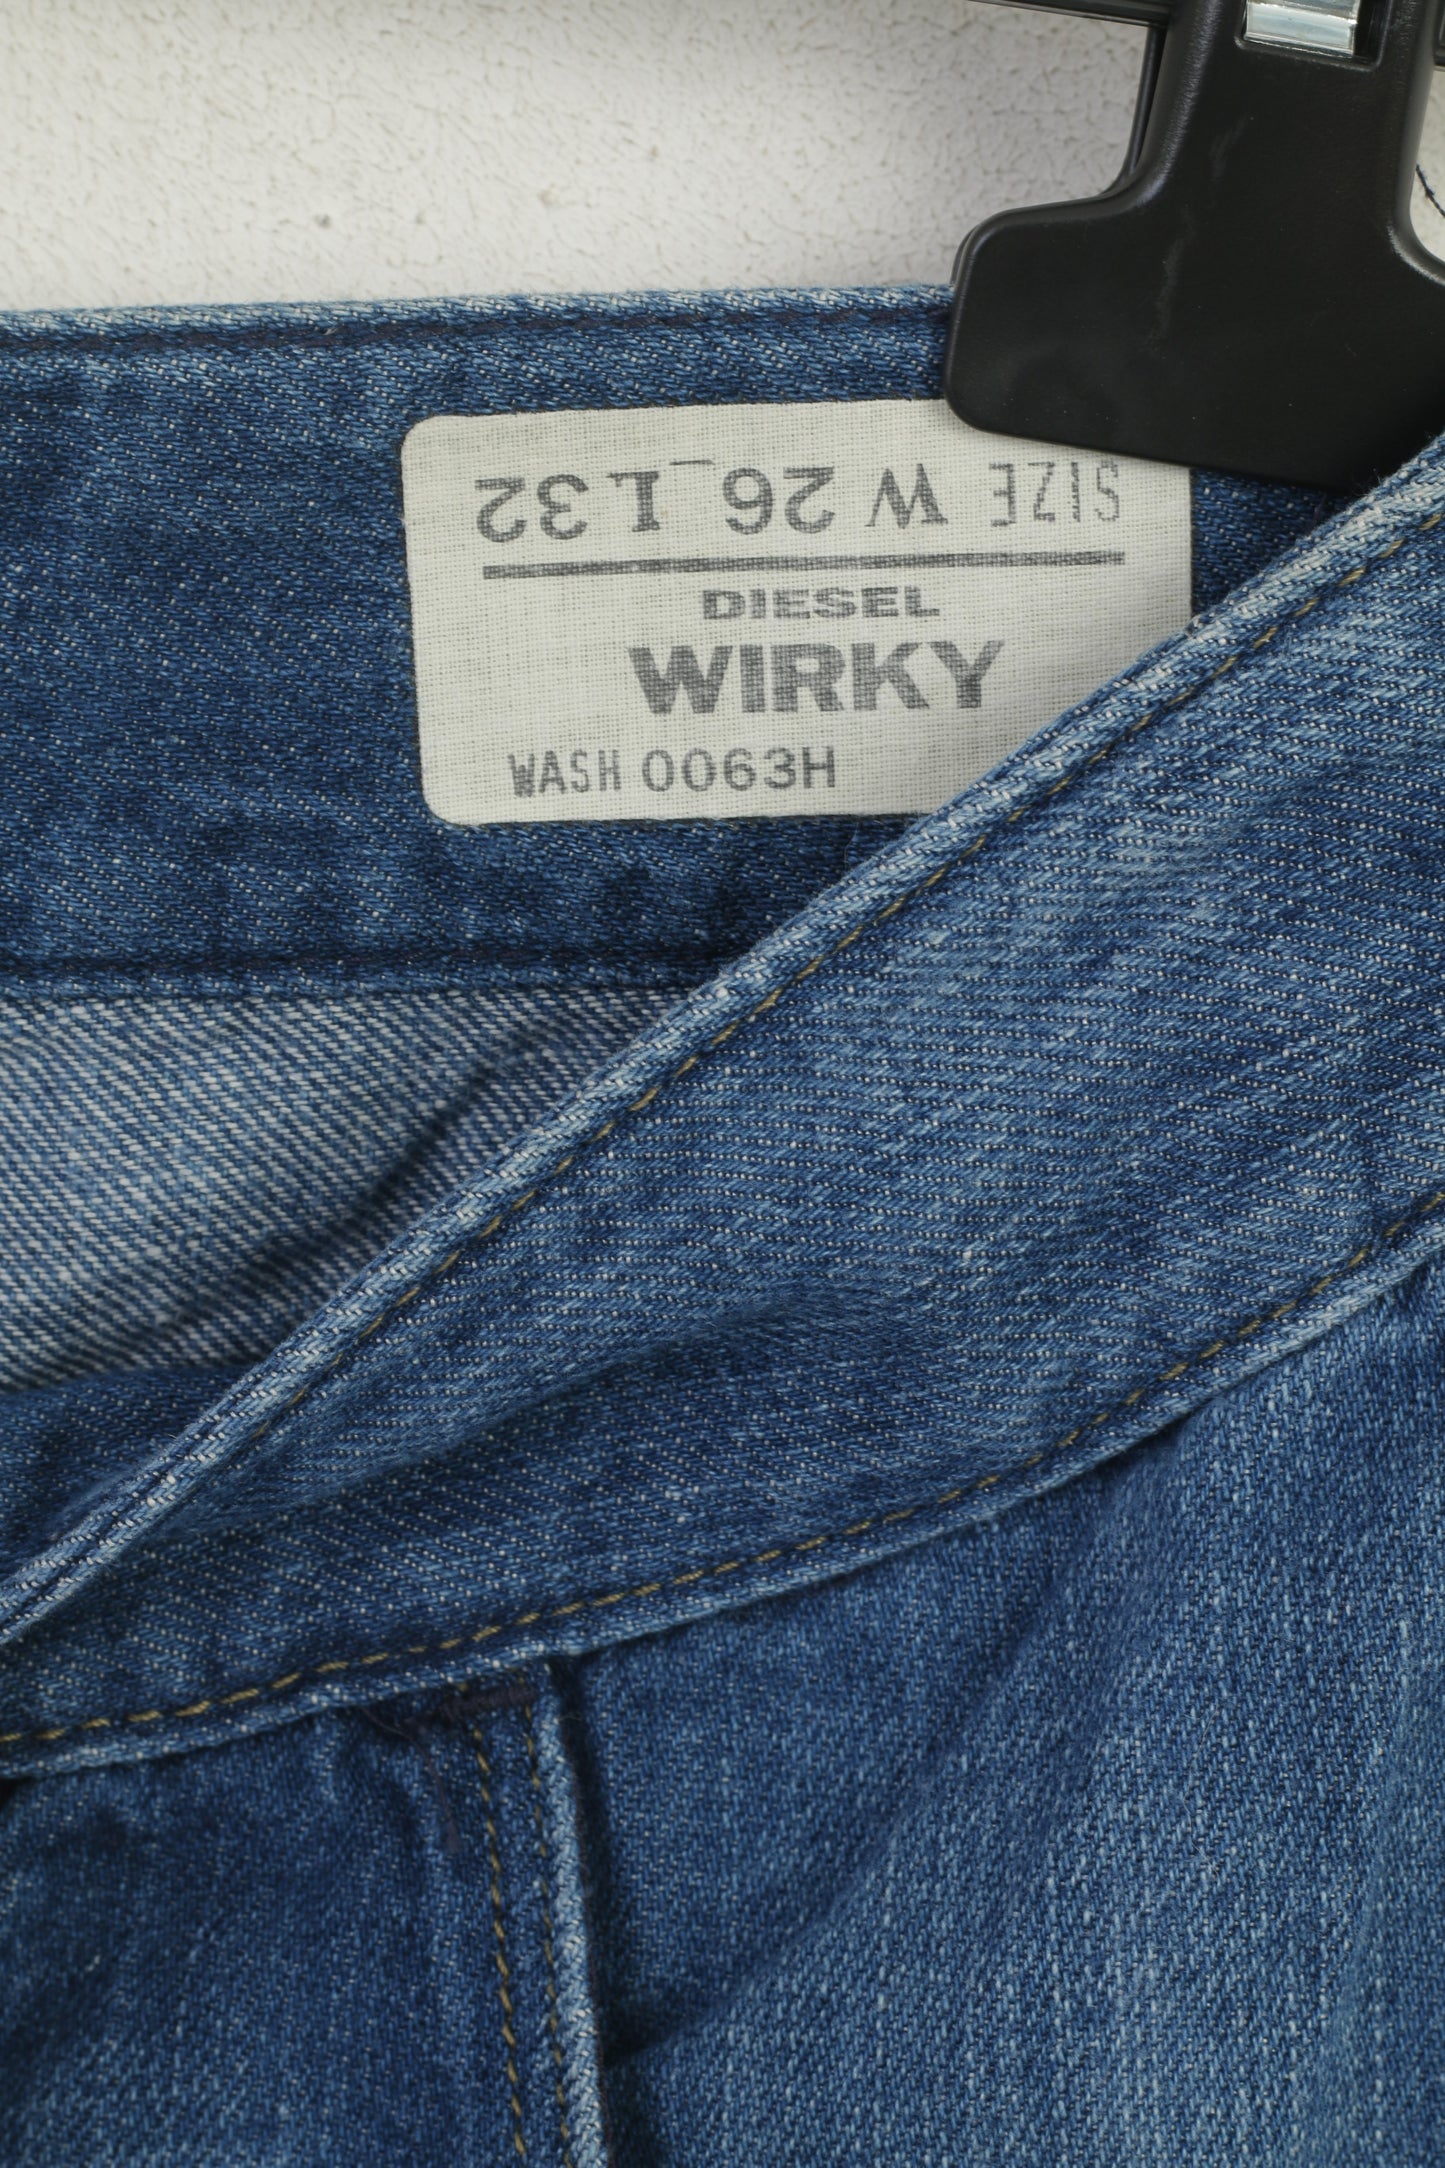 Diesel Wirky Women 26 Trousers Blue Cotton Linen WashLoose Legs Pants